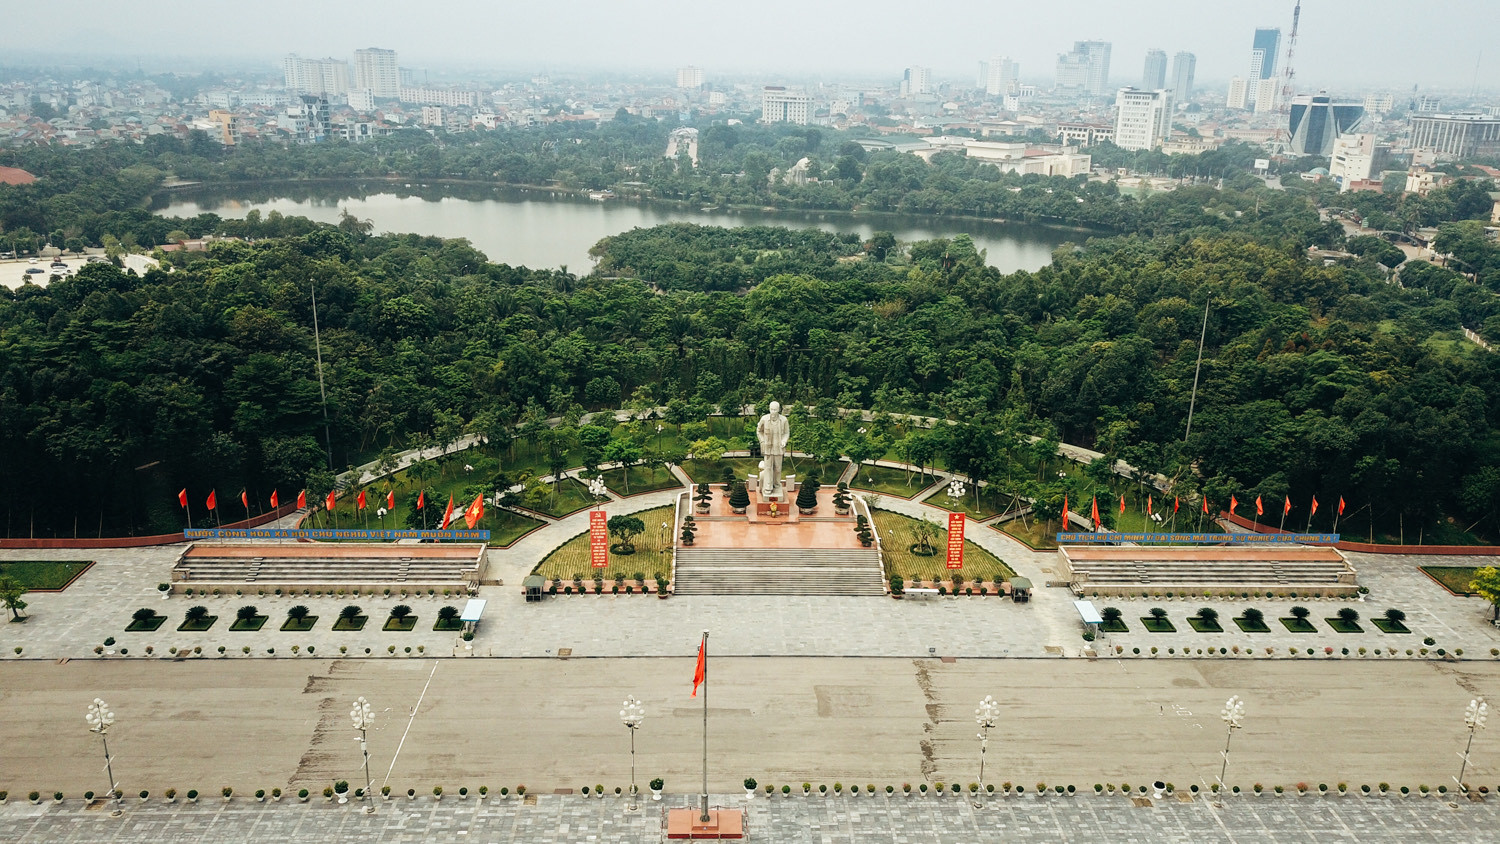 Quảng trường Hồ Chí Minh và tượng đài Bác Hồ tại trung tâm thành phố Vinh. Ảnh: Hải Vương